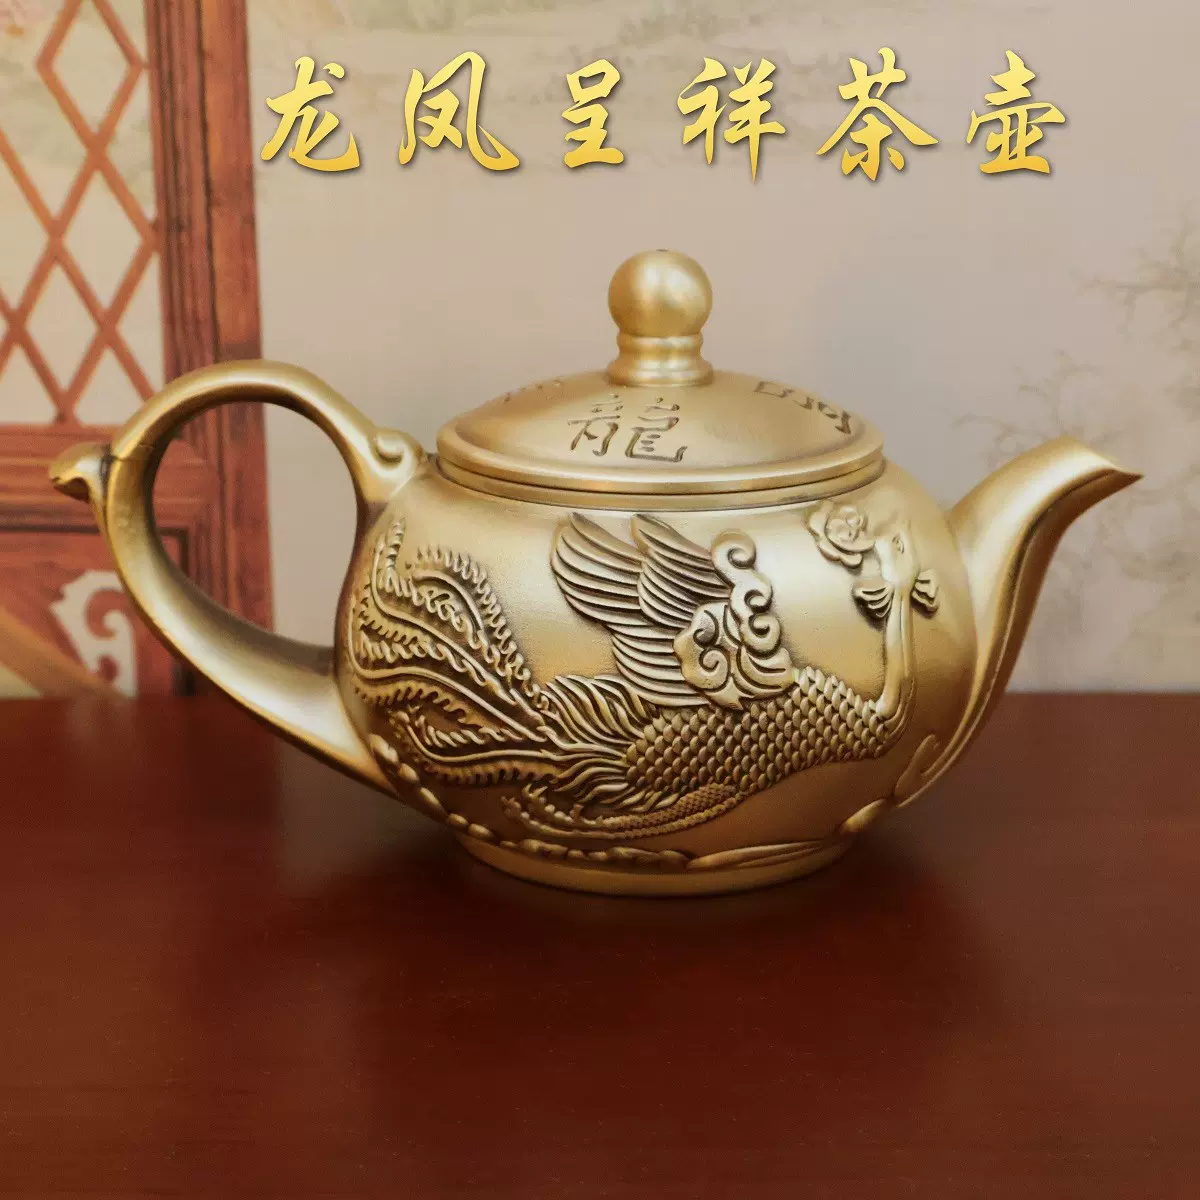 黃銅龍鳳呈祥茶壺壺銅茶壺家居創意銅器擺件金屬黃銅茶壺工藝禮品擺飾 